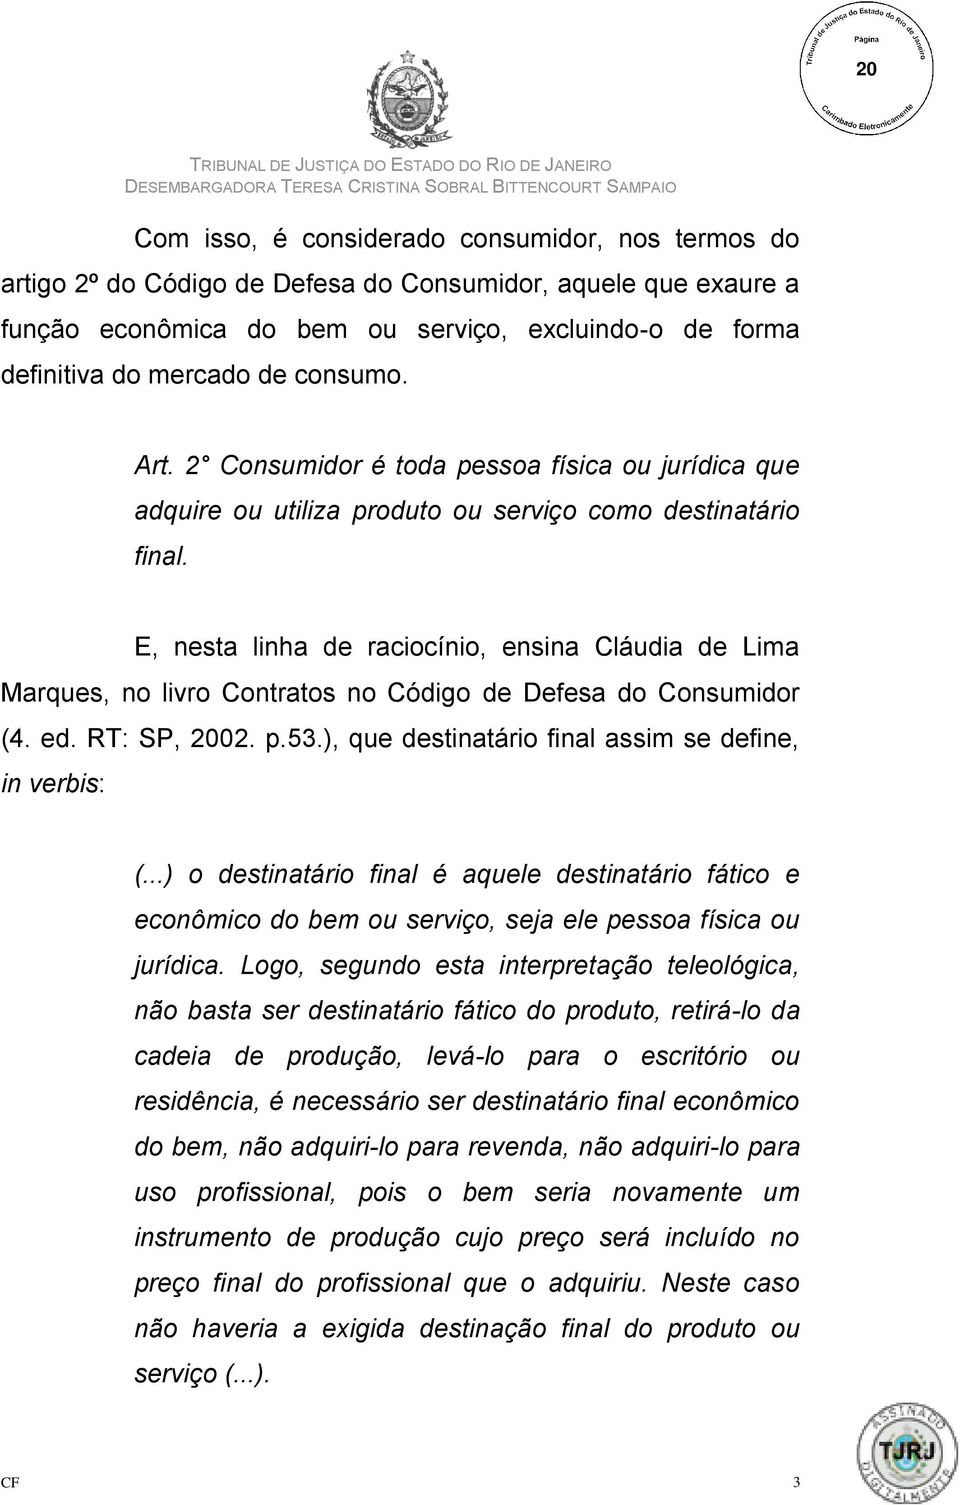 E, nesta linha de raciocínio, ensina Cláudia de Lima Marques, no livro Contratos no Código de Defesa do Consumidor (4. ed. RT: SP, 2002. p.53.), que destinatário final assim se define, in verbis: (.